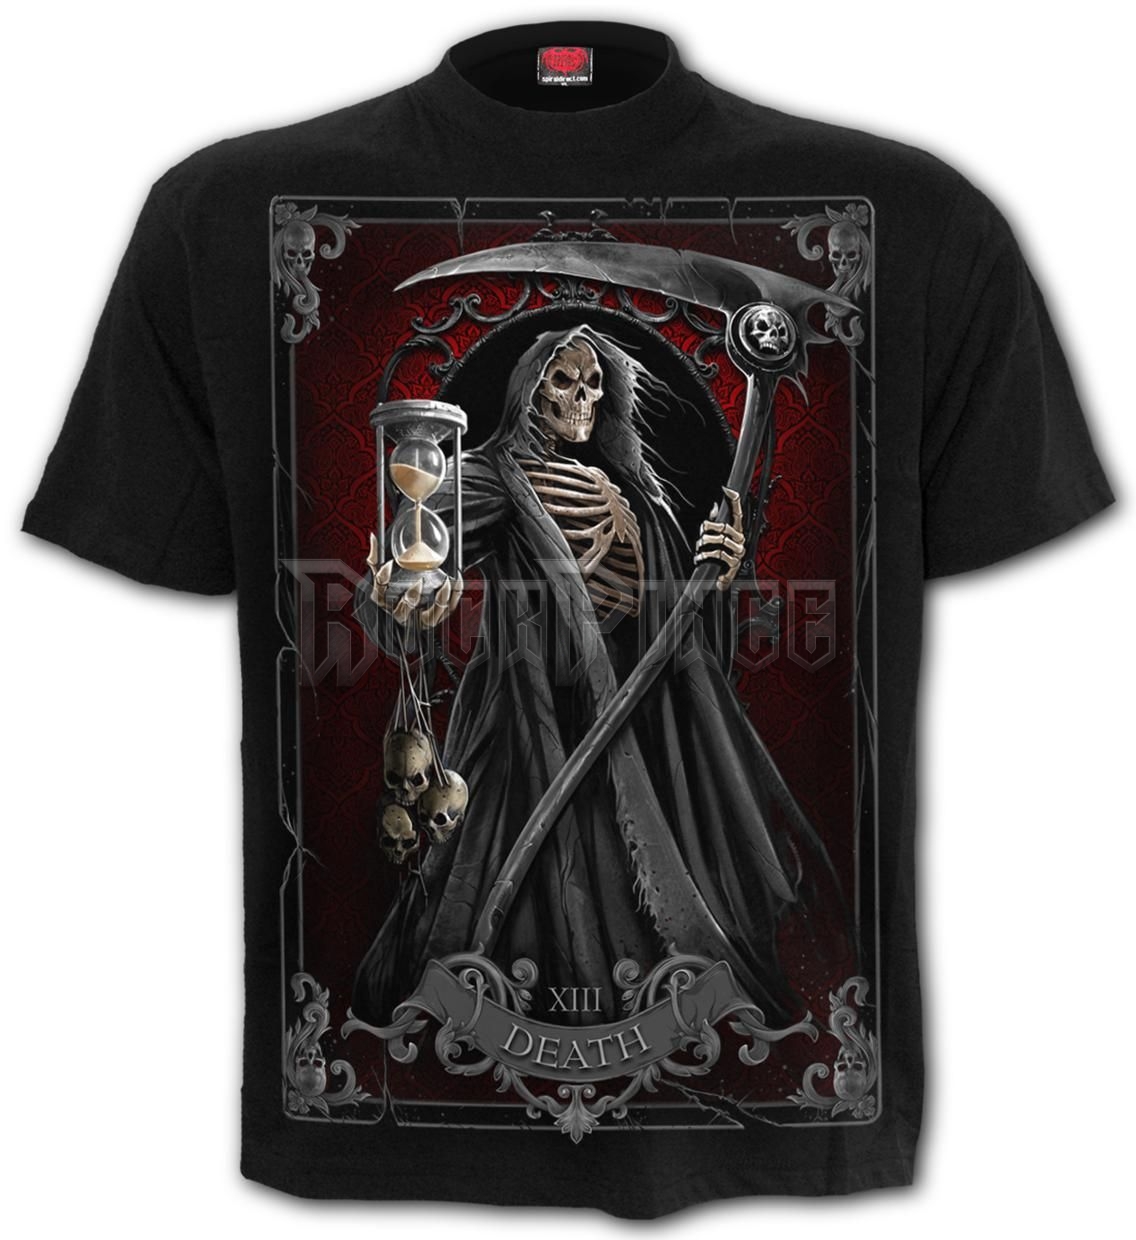 DEATH TAROT - T-Shirt Black - T202M101